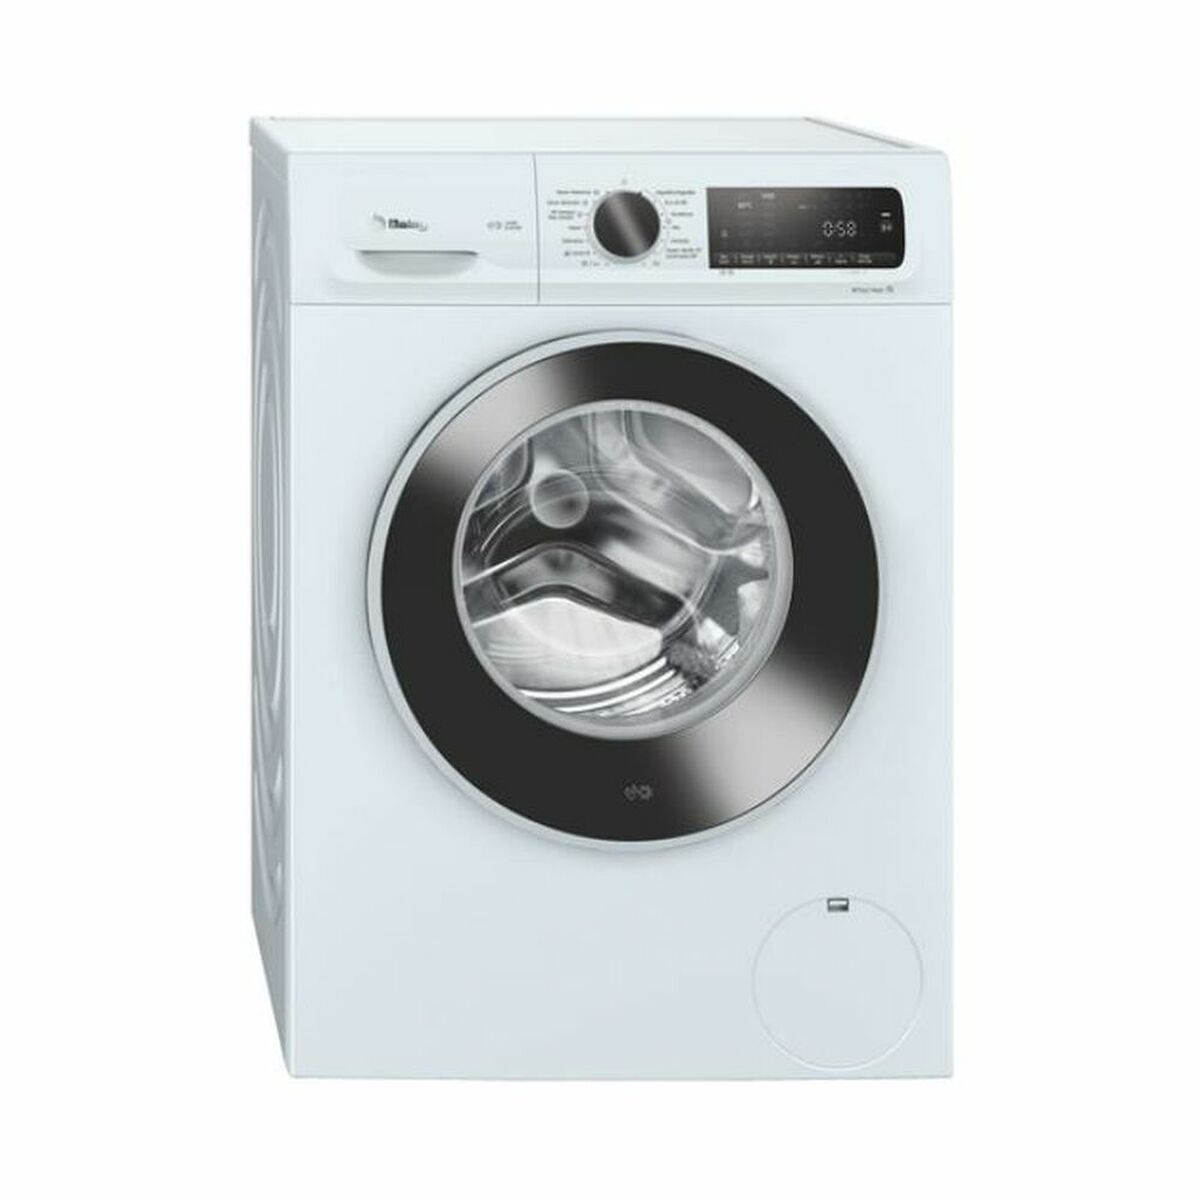 Washer - Dryer Balay 3TW984B 8kg / 6kg White 1400 rpm